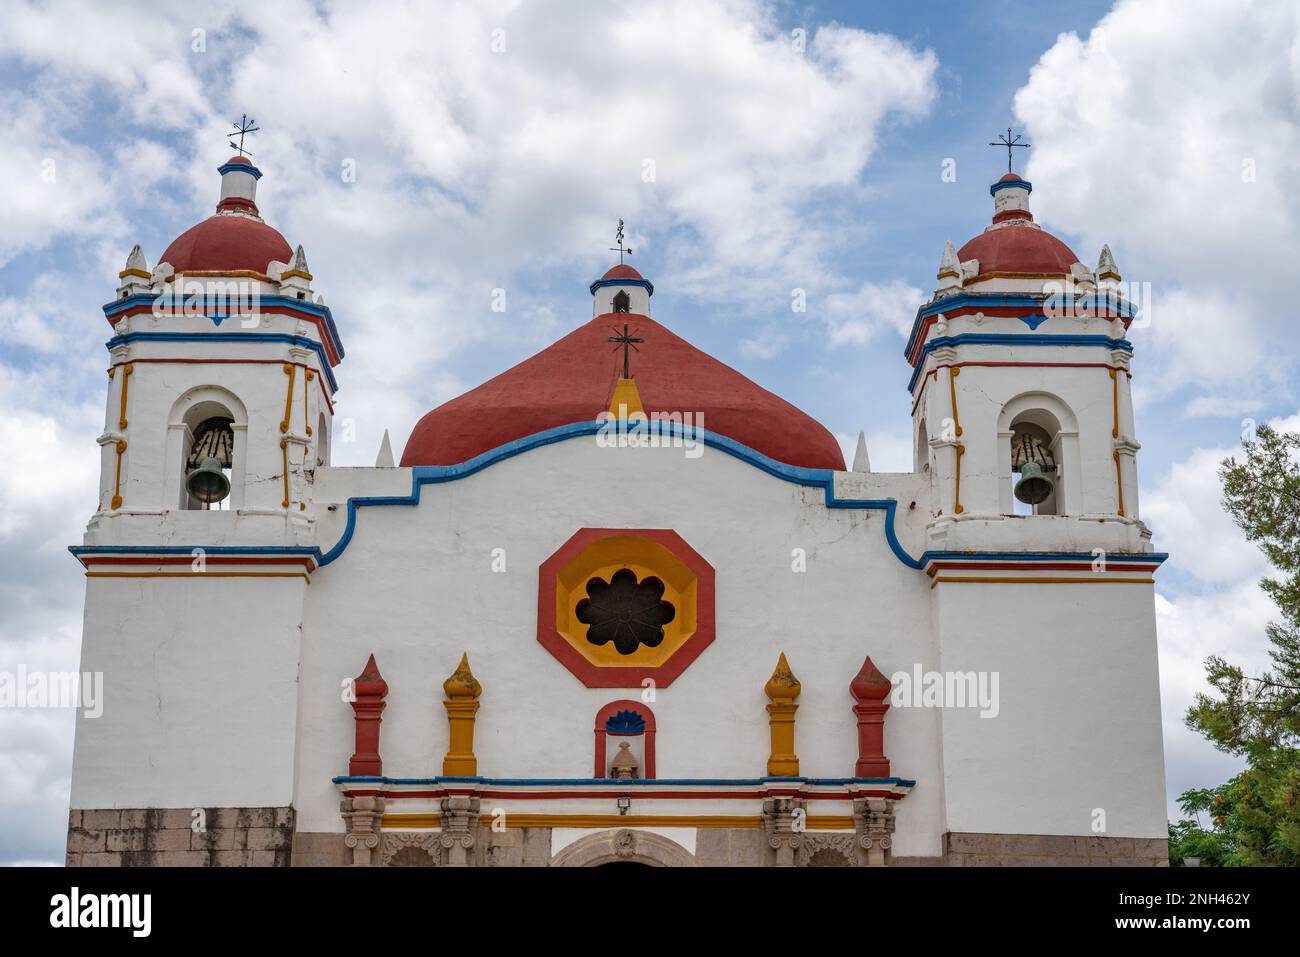 The parish church of San Bartolo Coyotepec in the Central Valleys of Oaxaca, Mexico. Stock Photo